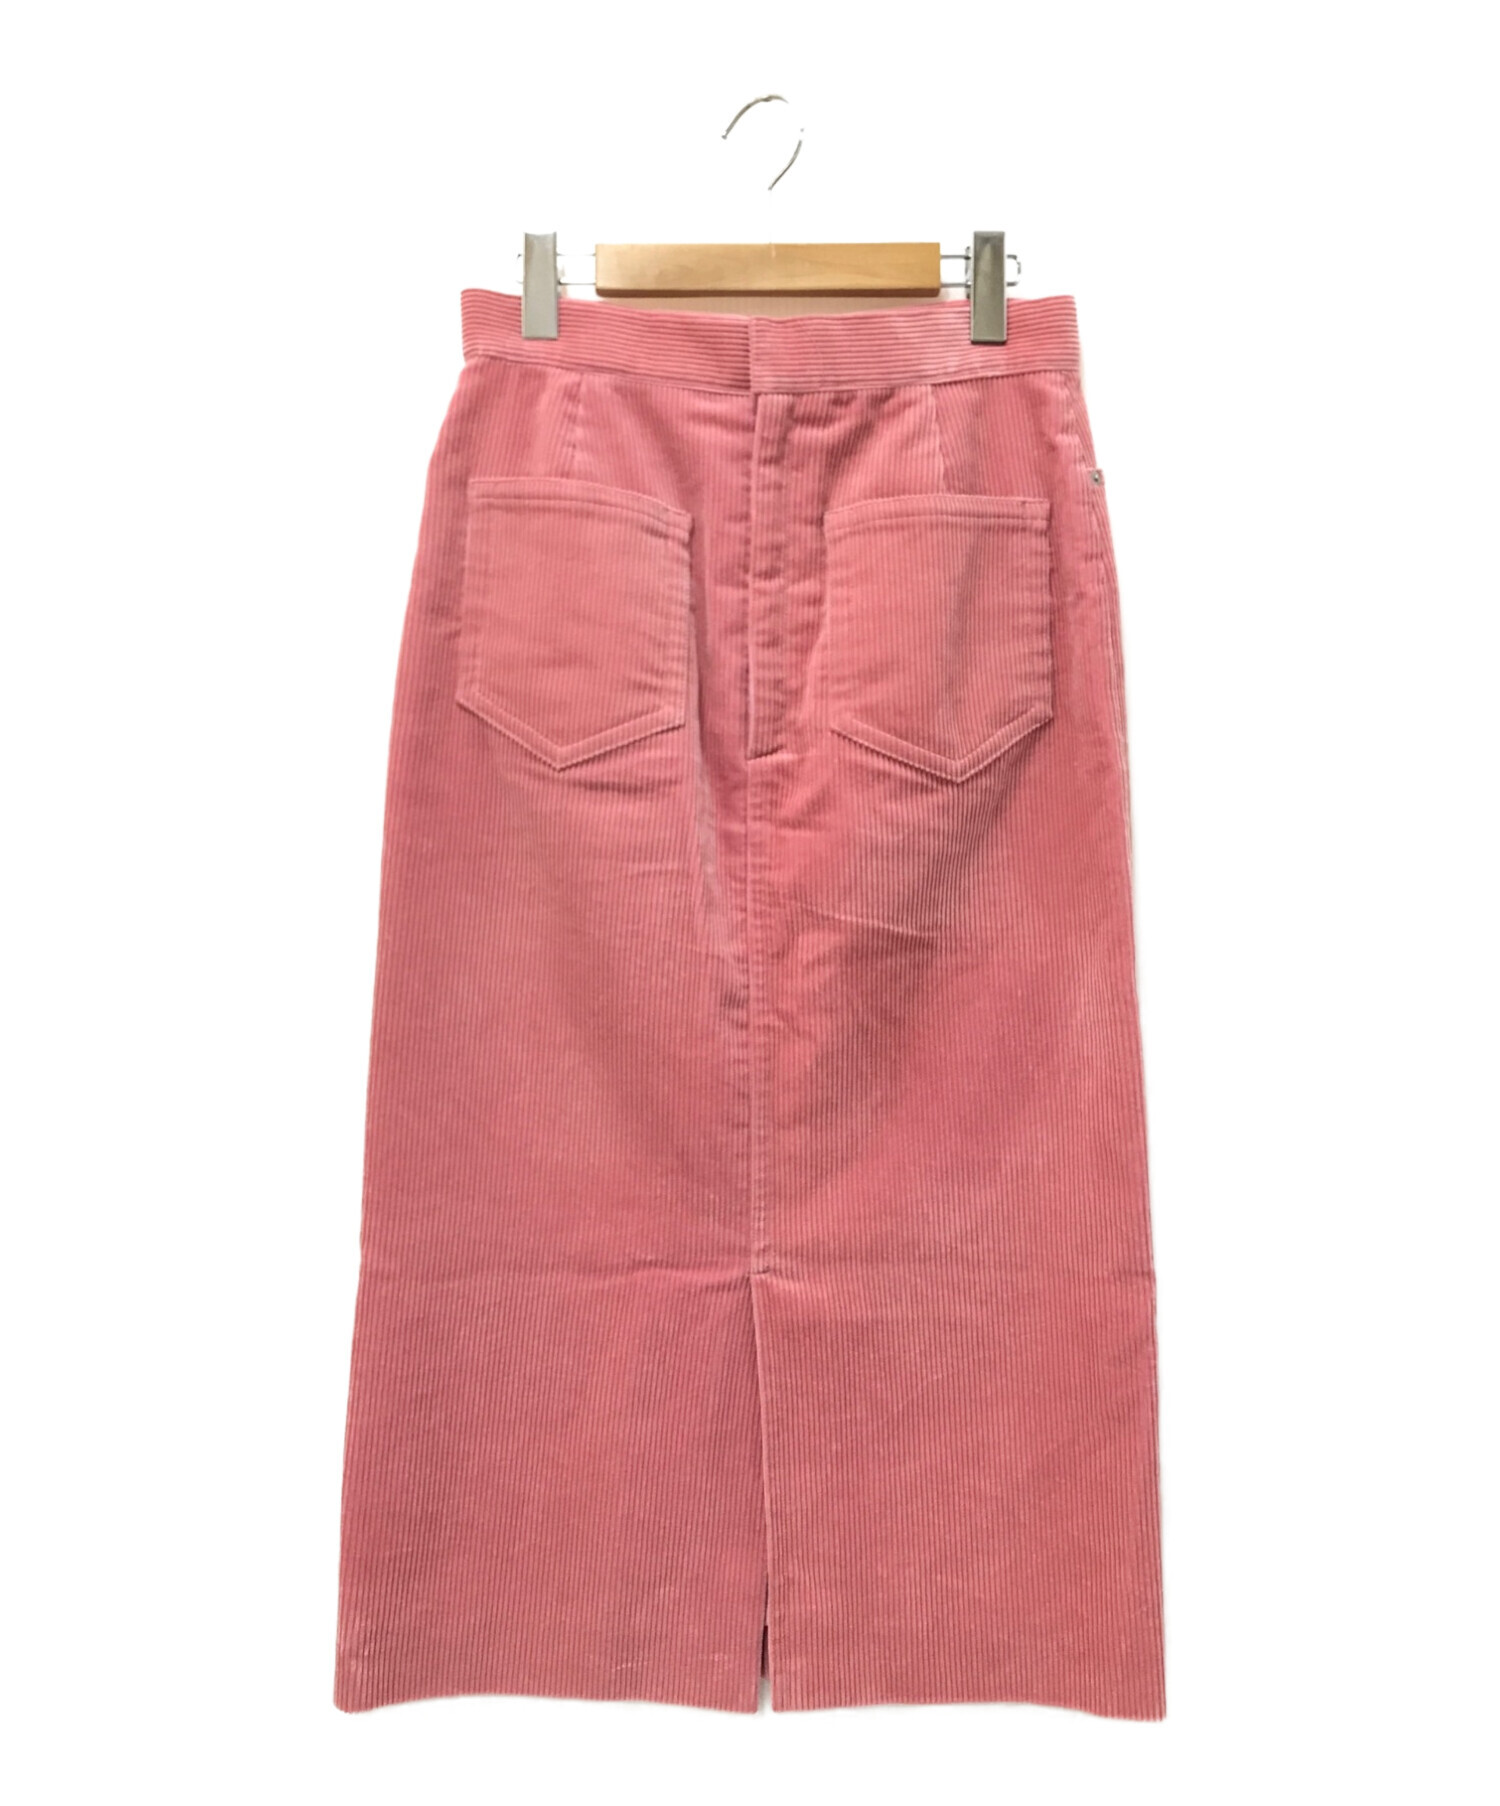 ☆ピンクコーデュロイスカート☆ - スカート